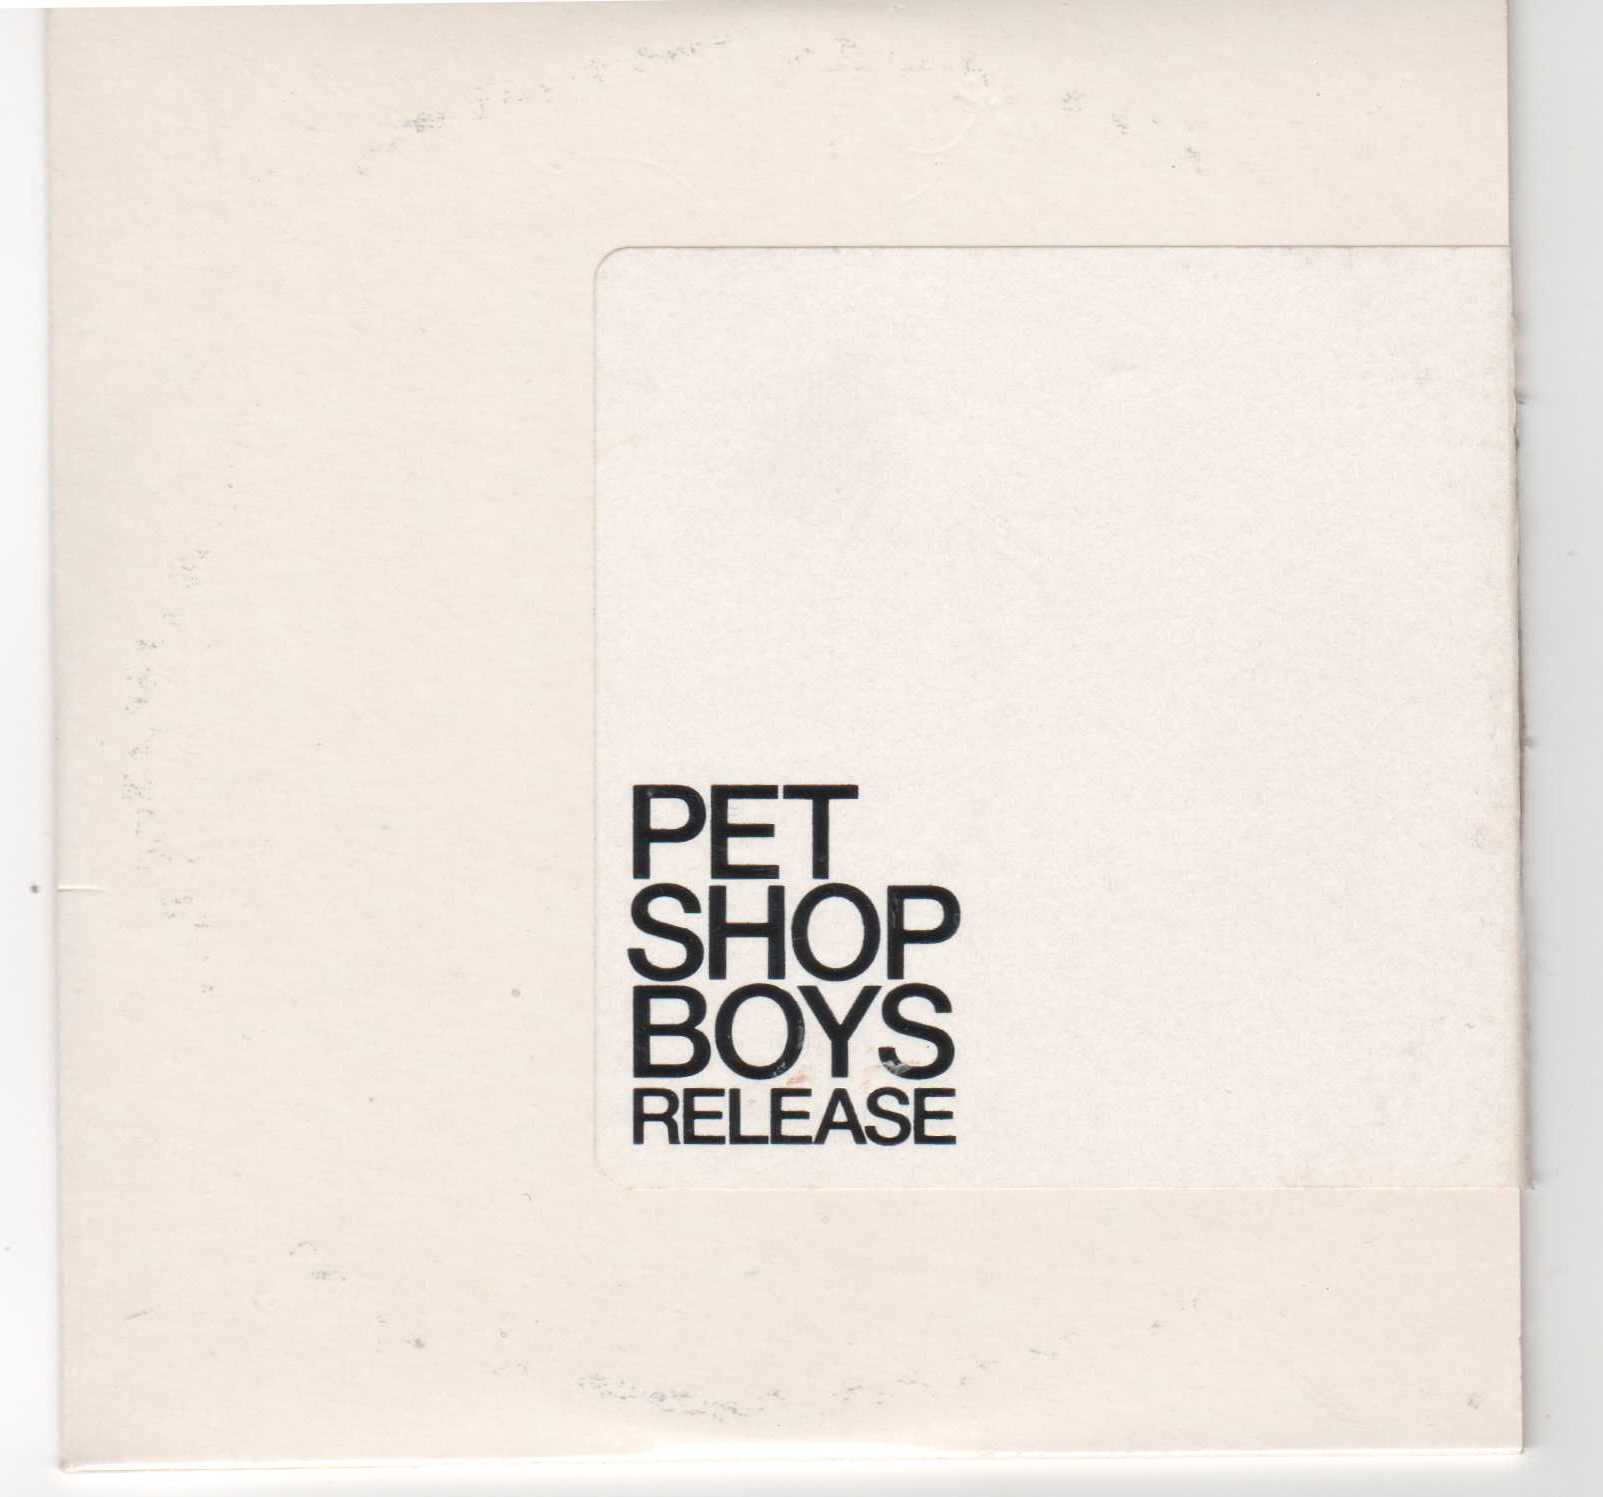 Loneliness pet shop boys. Pet shop boys 2002 release CD. Pet shop boys release 2002. Release альбом Pet shop boys. Pet shop boys release 2002 обложка.